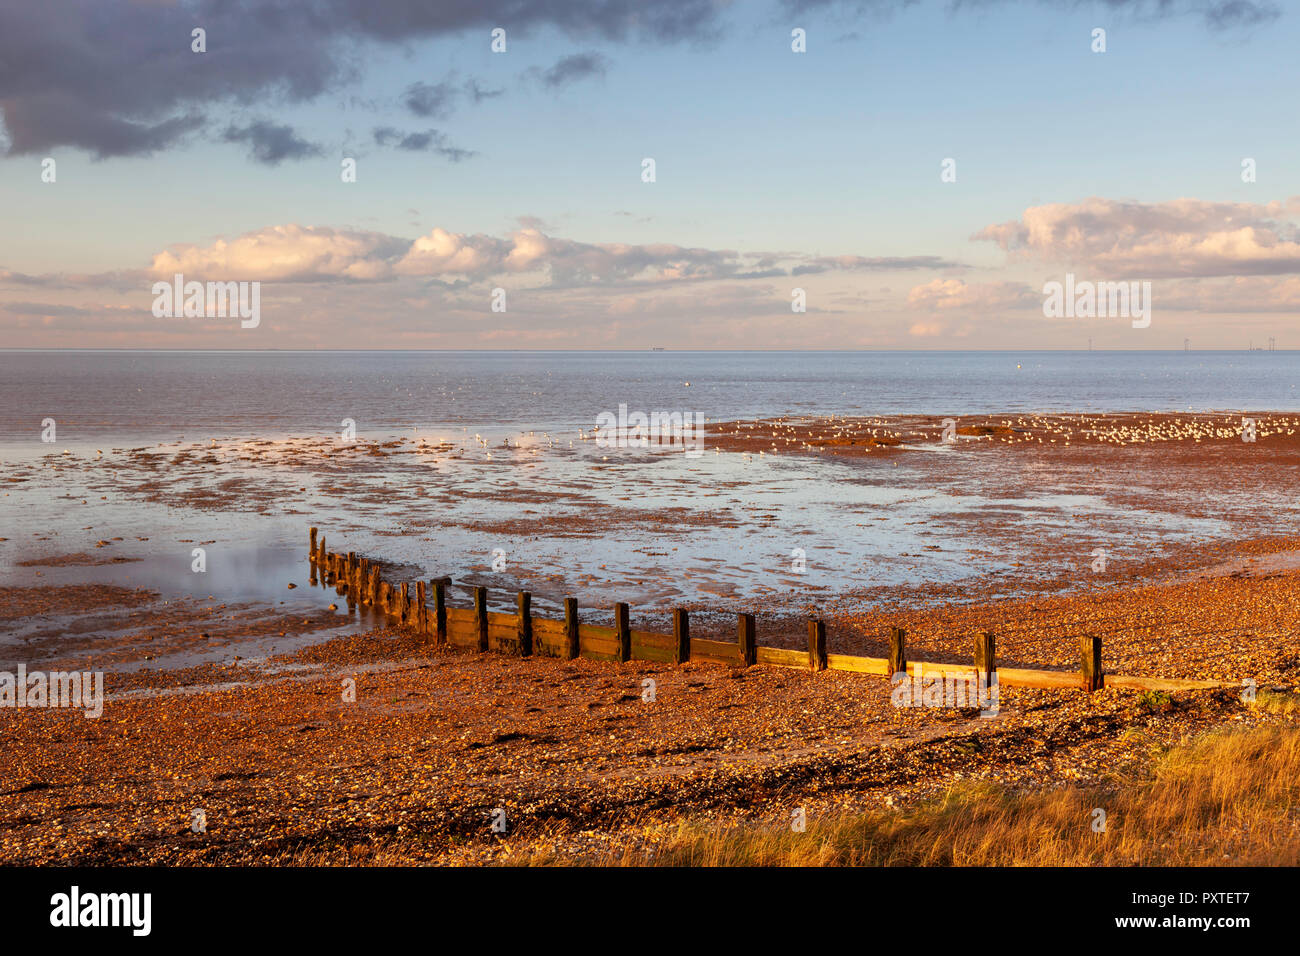 La lumière vive juste avant le coucher du soleil pendant le mois de février sur la plage de galets à Seasalter, près de Hastings sur la côte nord du Kent, au Royaume-Uni. Banque D'Images